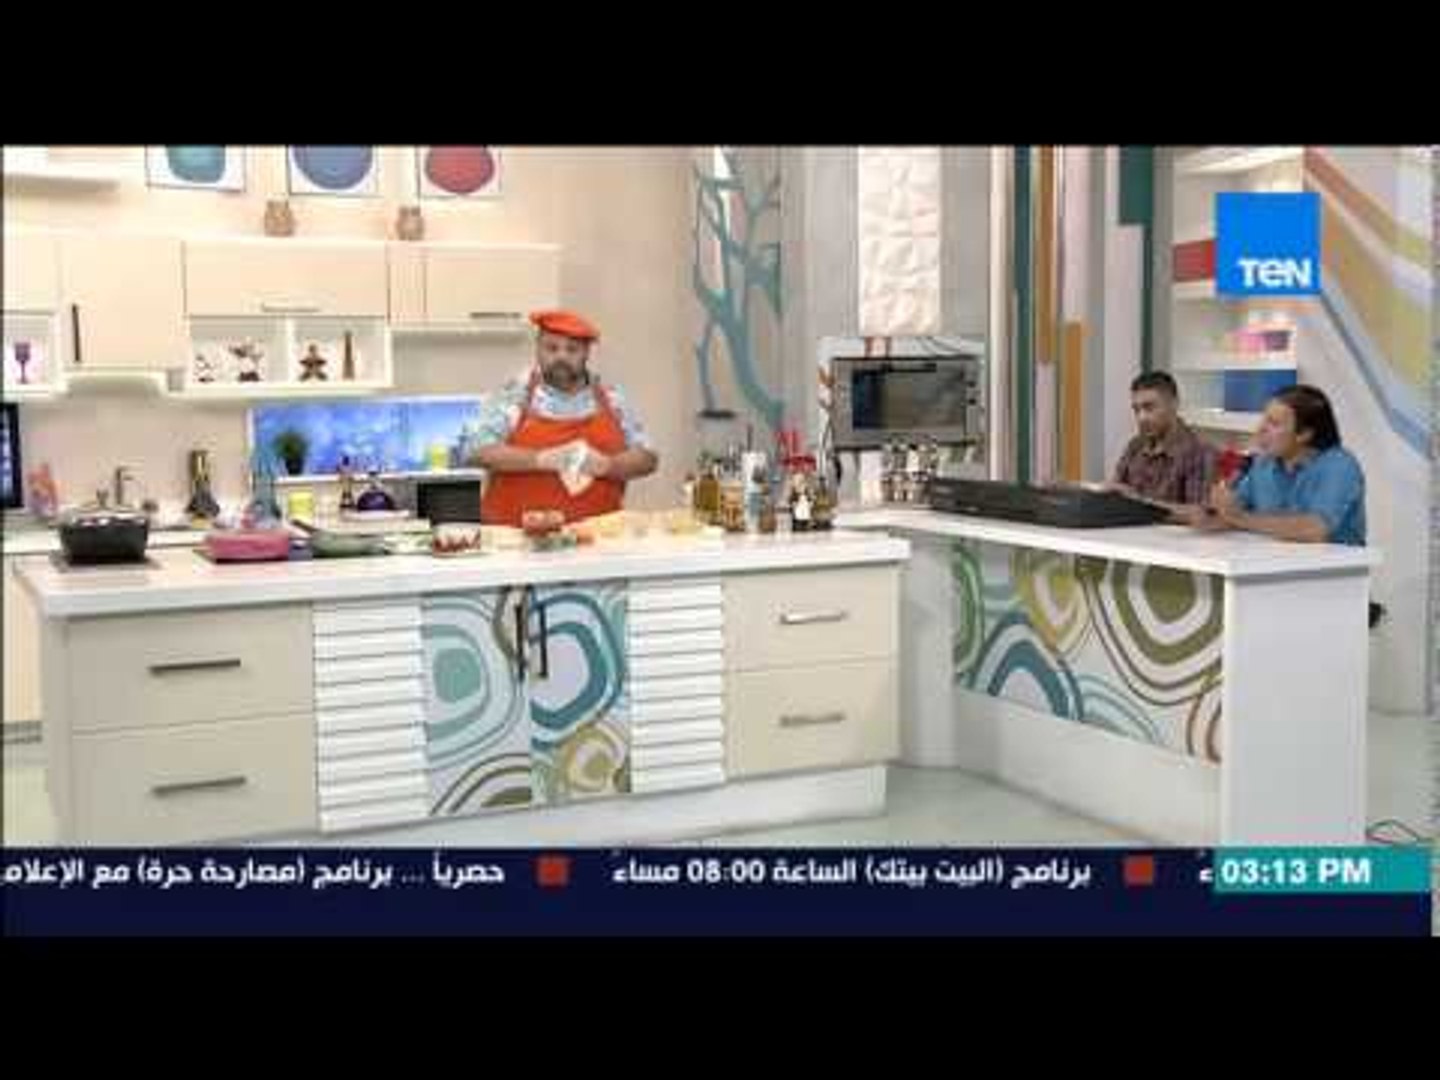 ⁣مطبخ 10/10 - Matbakh 10/10 - المطرب الصاعد محمد فؤاد 2 يغنى أغنية